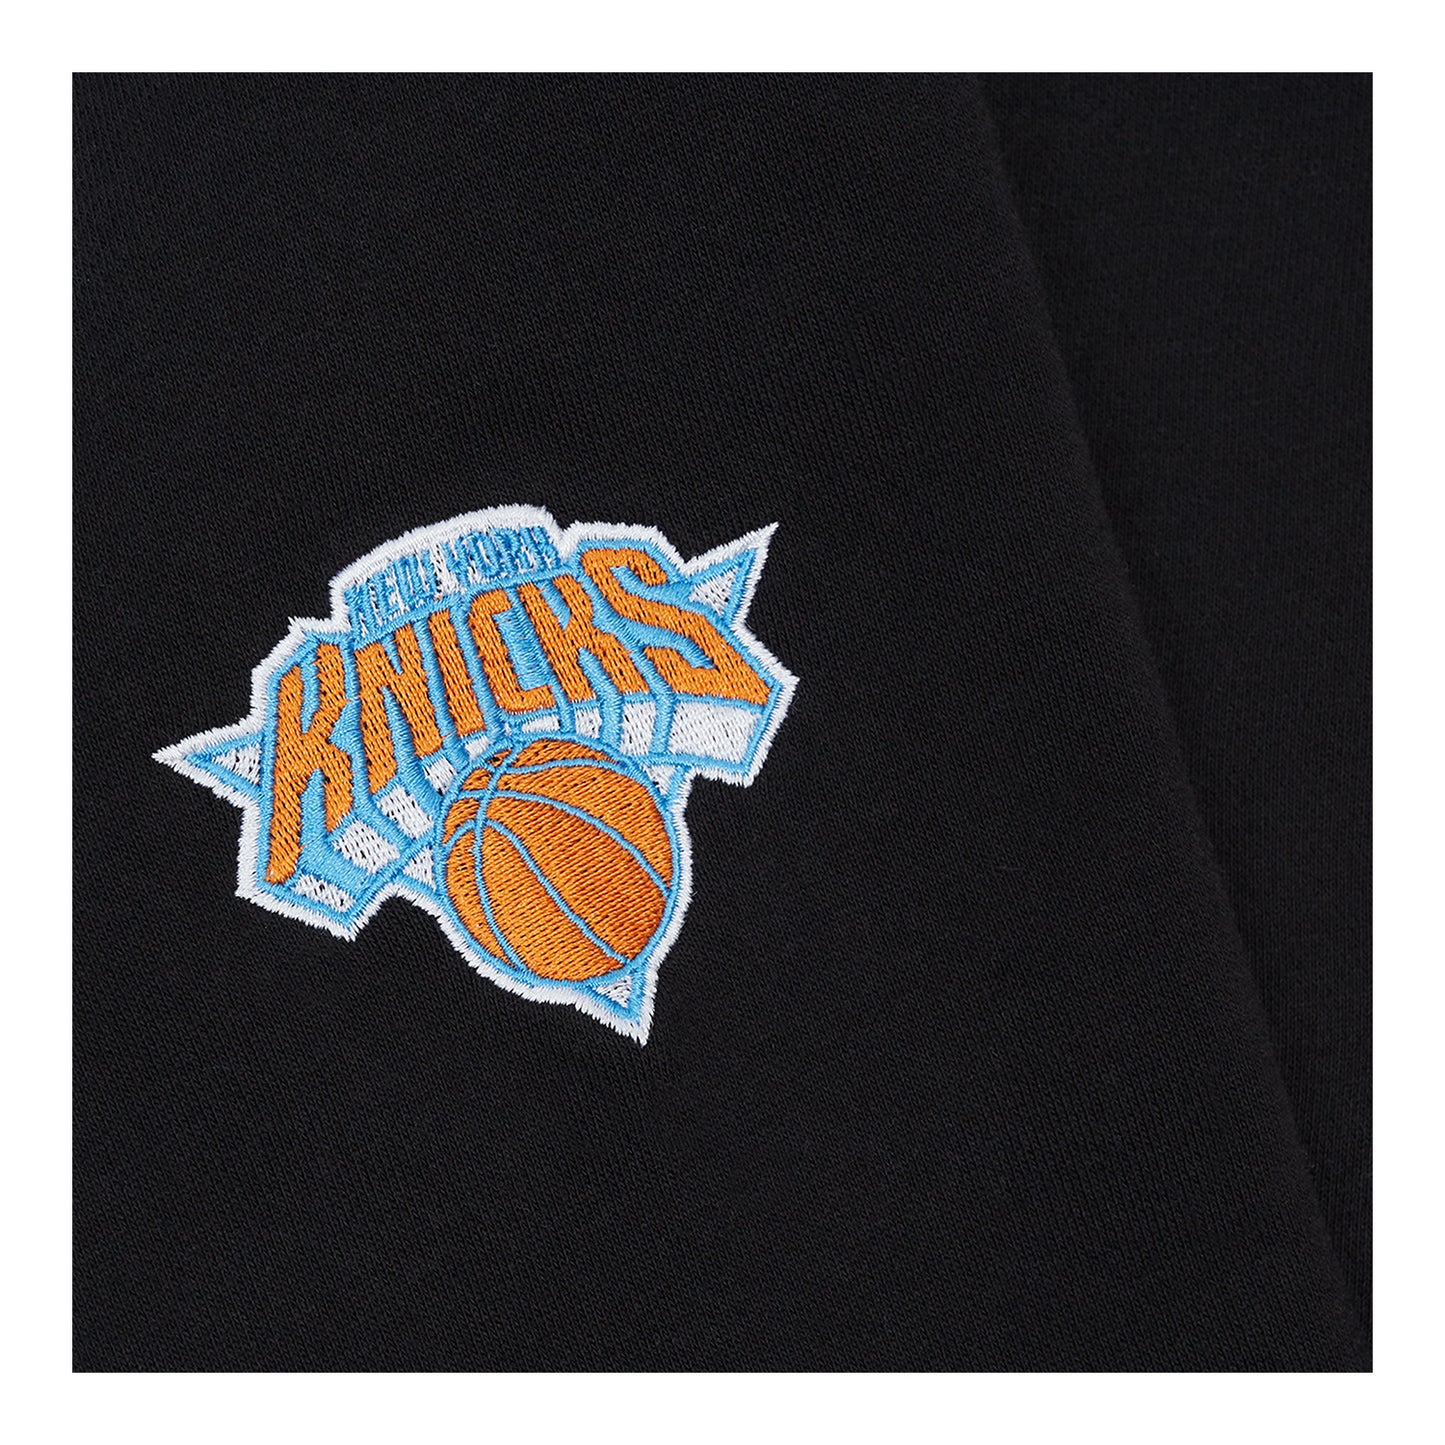 NYON x Knicks Black "Mascot" Crew - Detail View